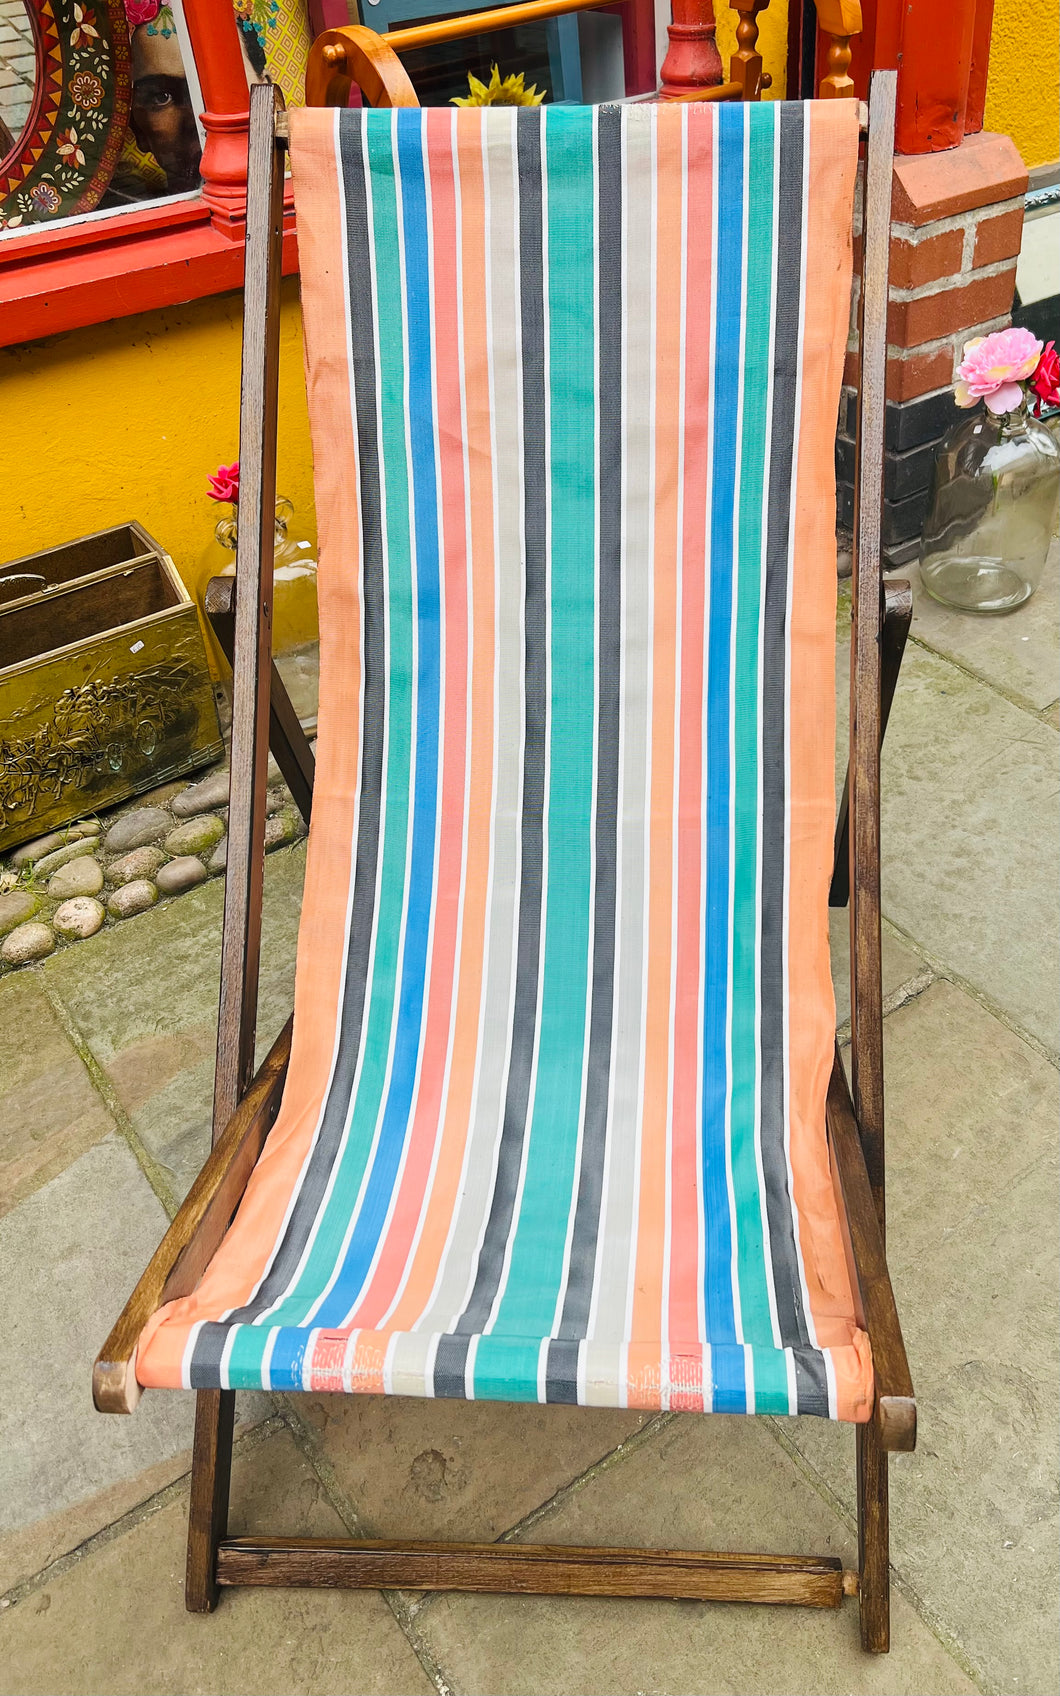 ‘Deckchair’ Vintage gyda defnydd streipiog / Vintage striped fabric deckchair